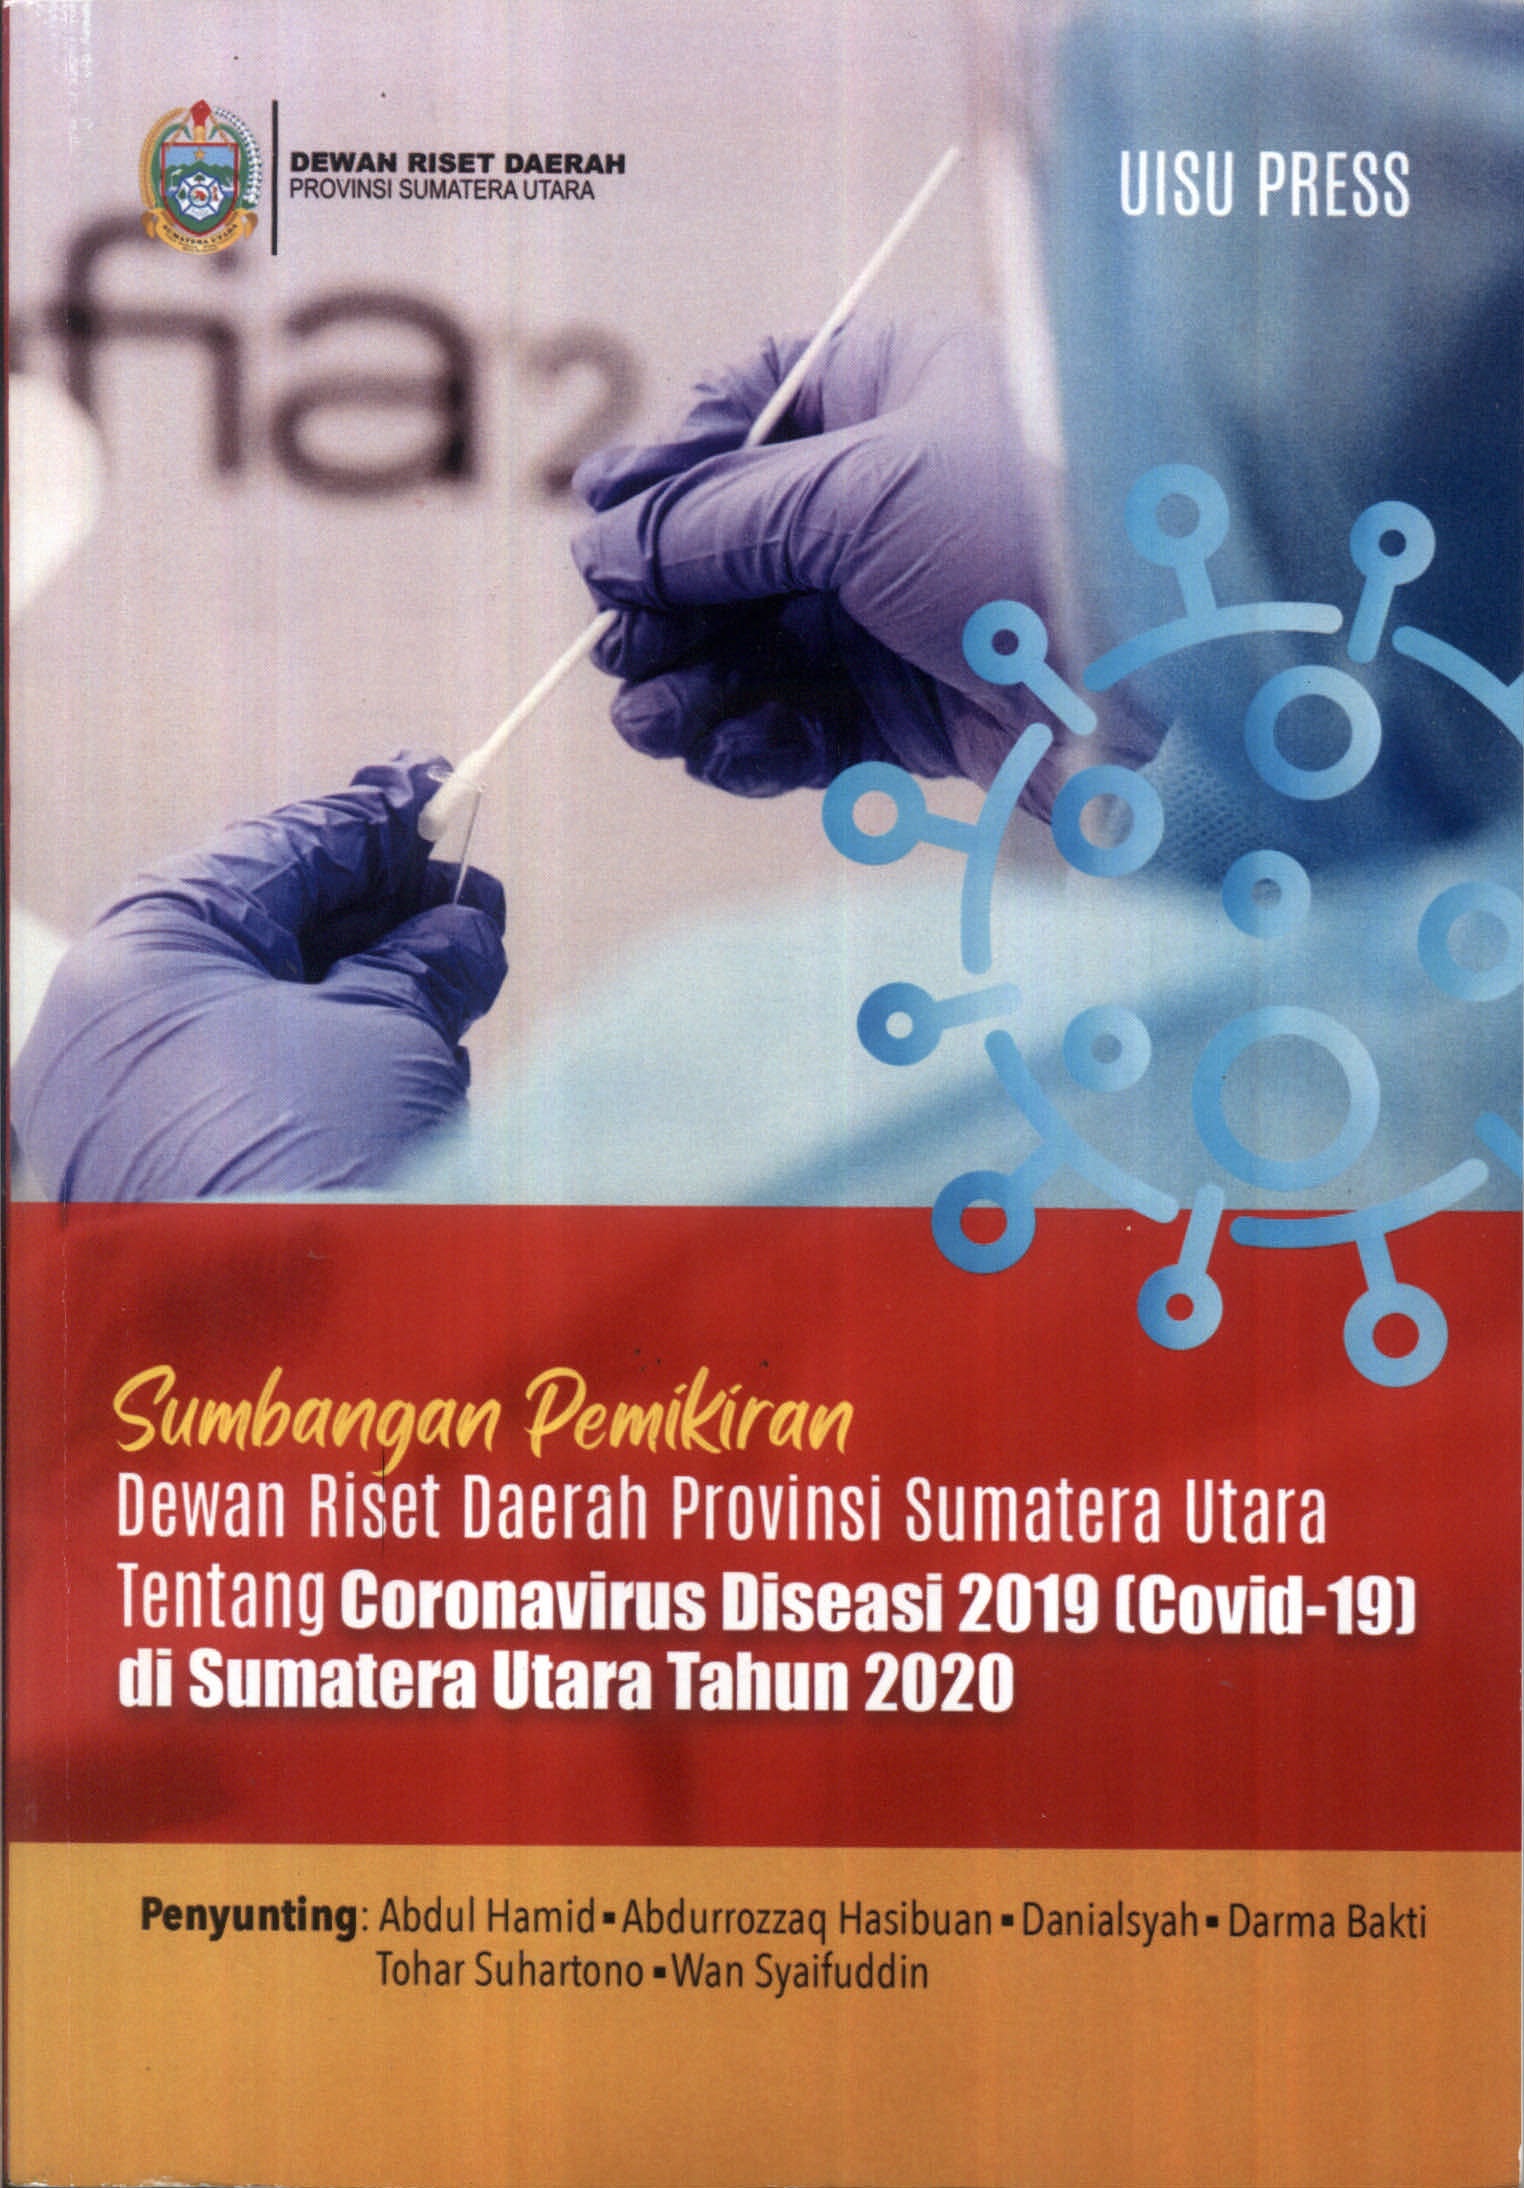 Sumbangan Pemikiran Dewan Riset Daerah Provinsi Sumatera Utara tentang Coronavirus Diseasi 2019 (Covid-19) di Sumatera Utara tahun 2020